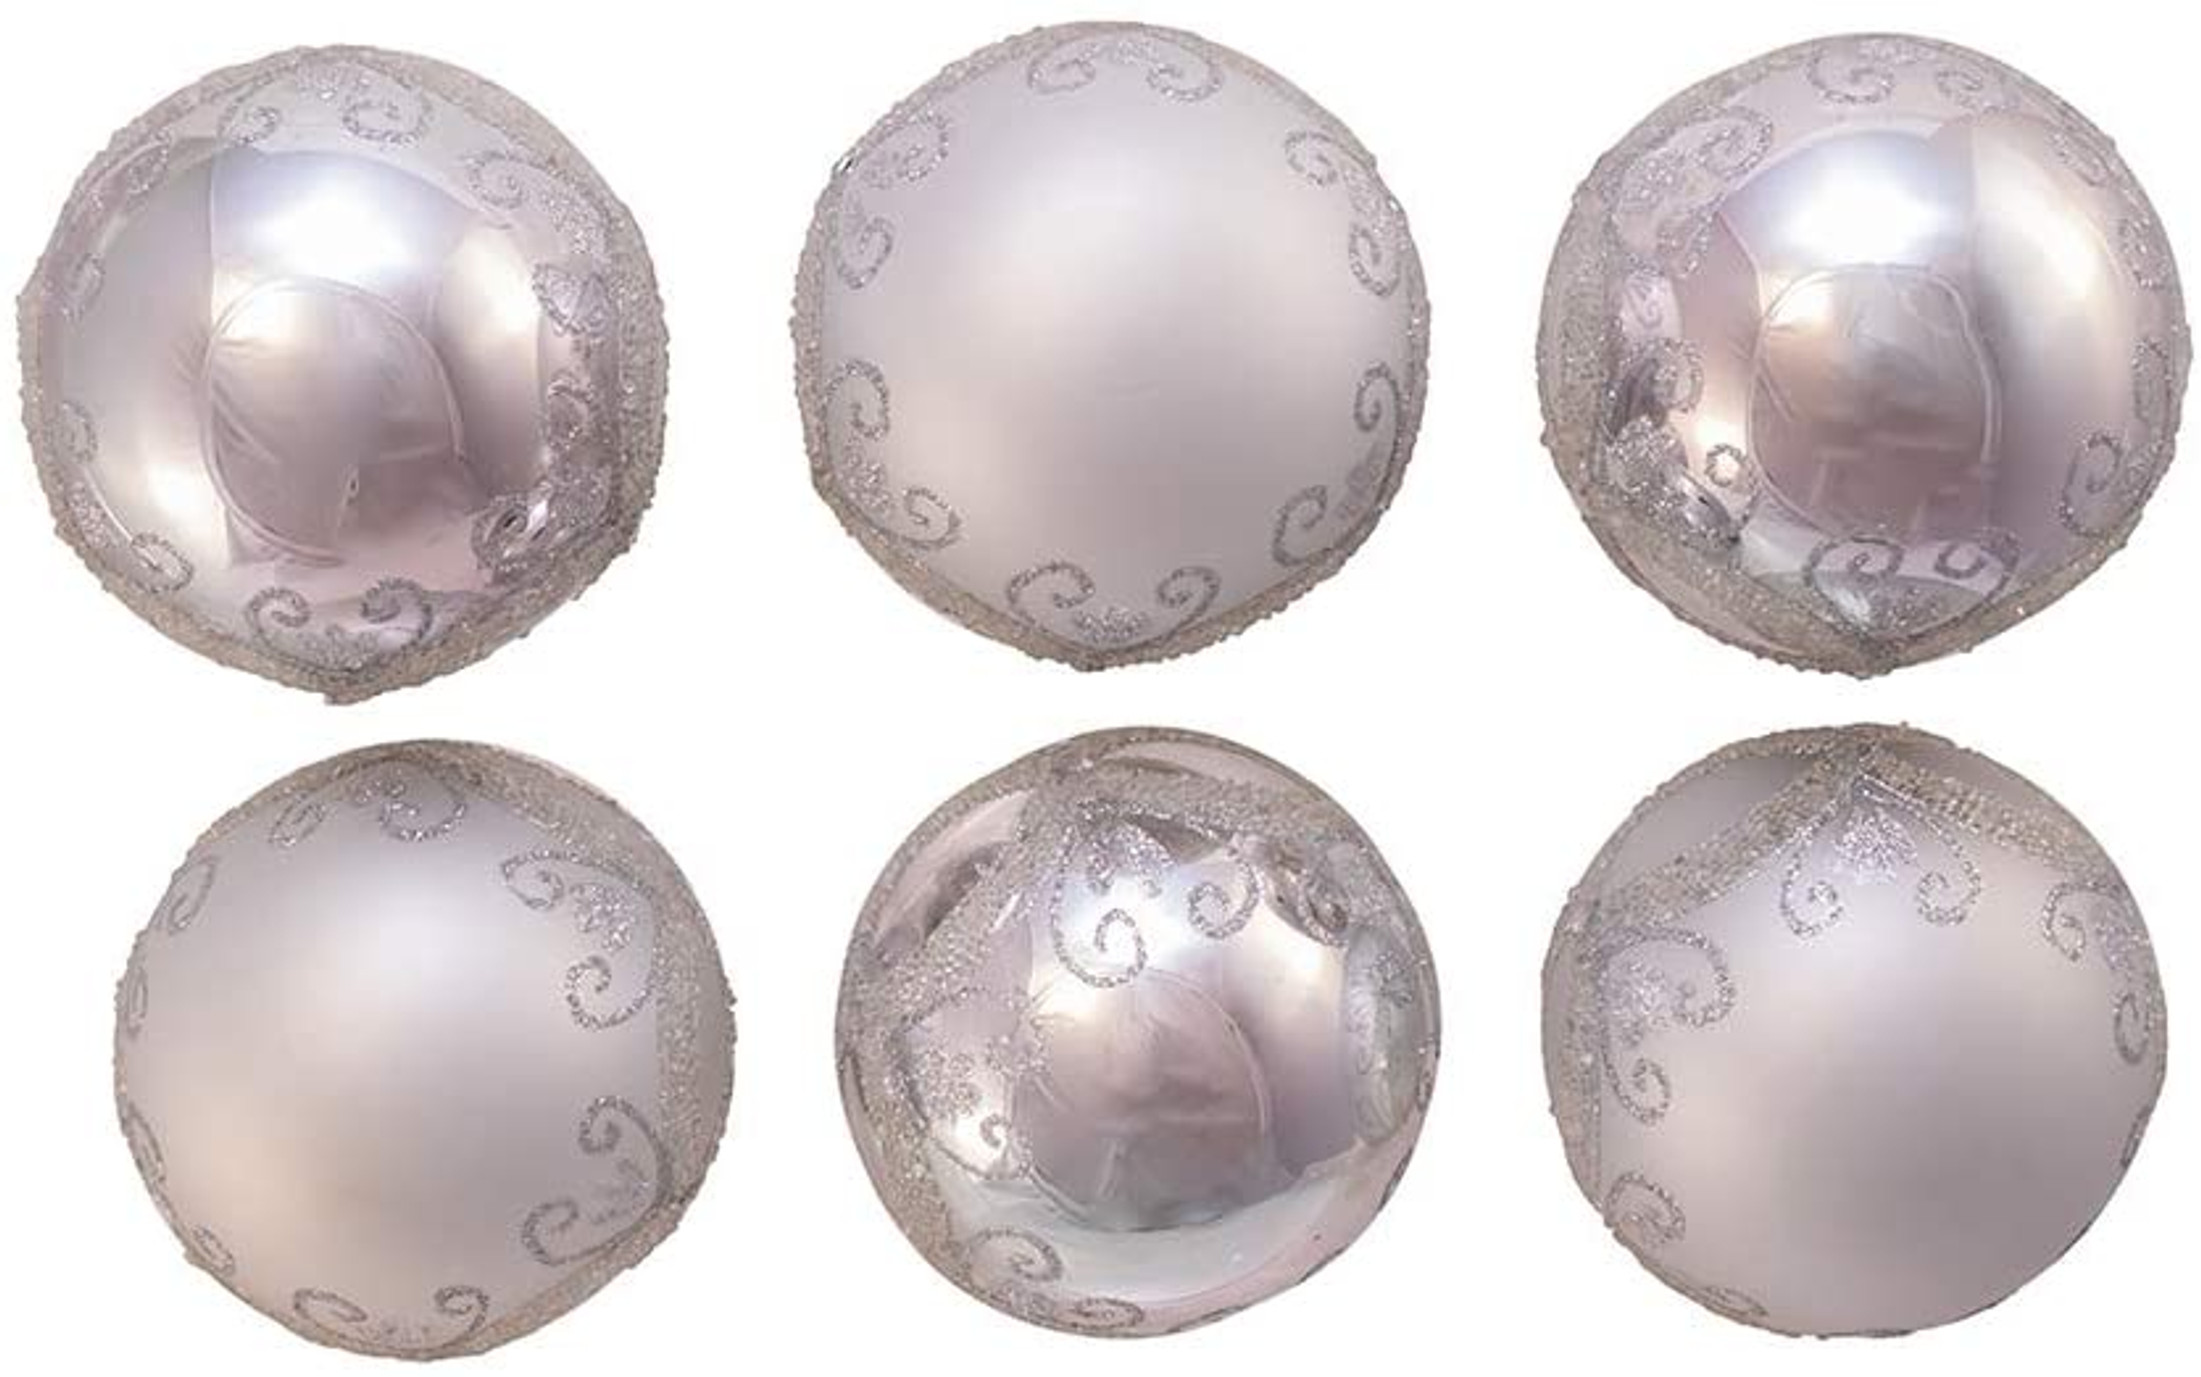 Kurt S. Adler Kurt Adler 80MM Silver with Glitter and Sequins Glass Ball, 6 Piece Box Ornament